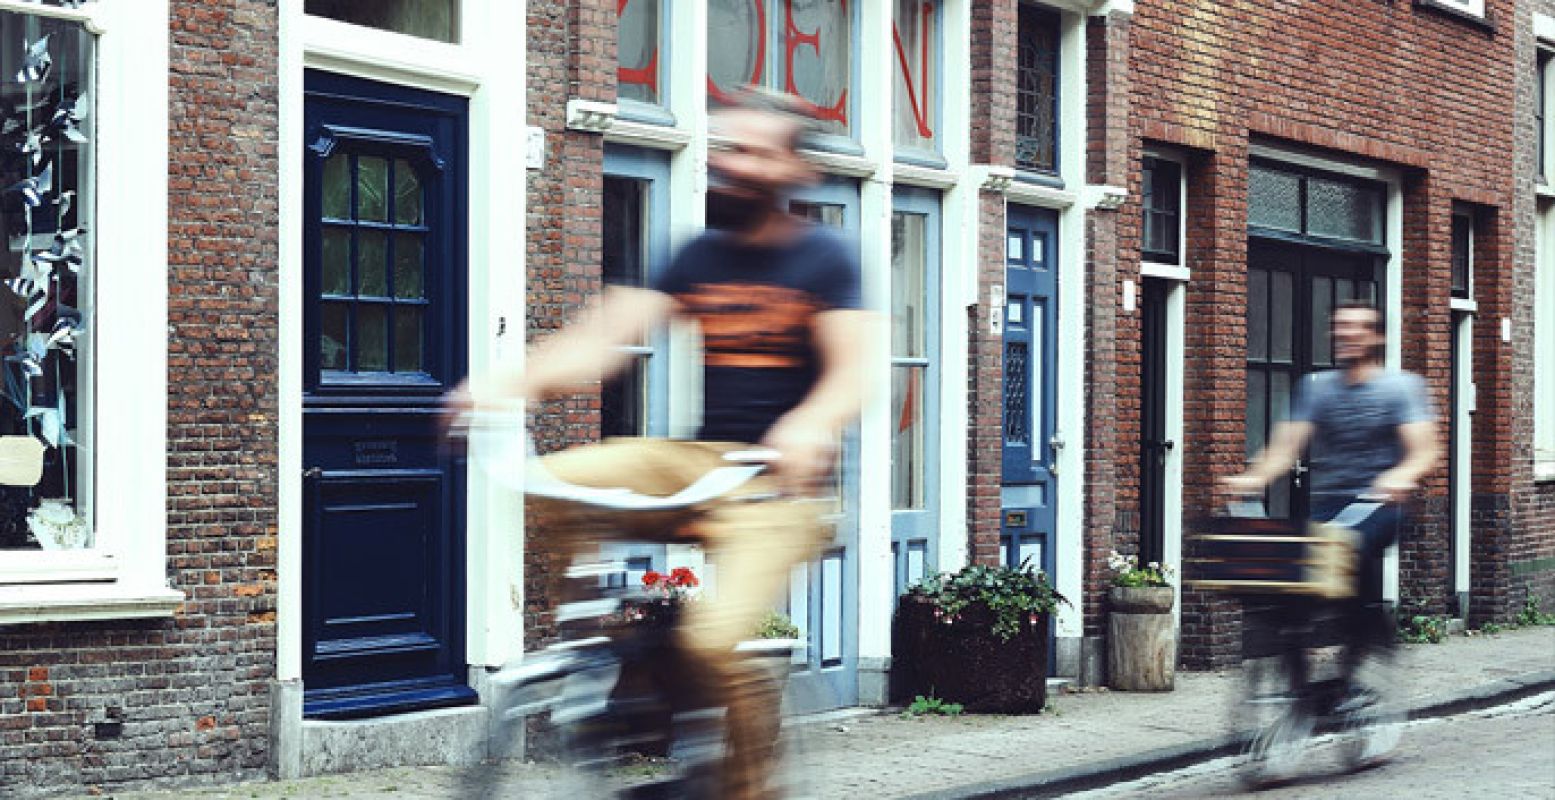 Vind de origineelste hotspots van Leiden met Bizon Bikes.